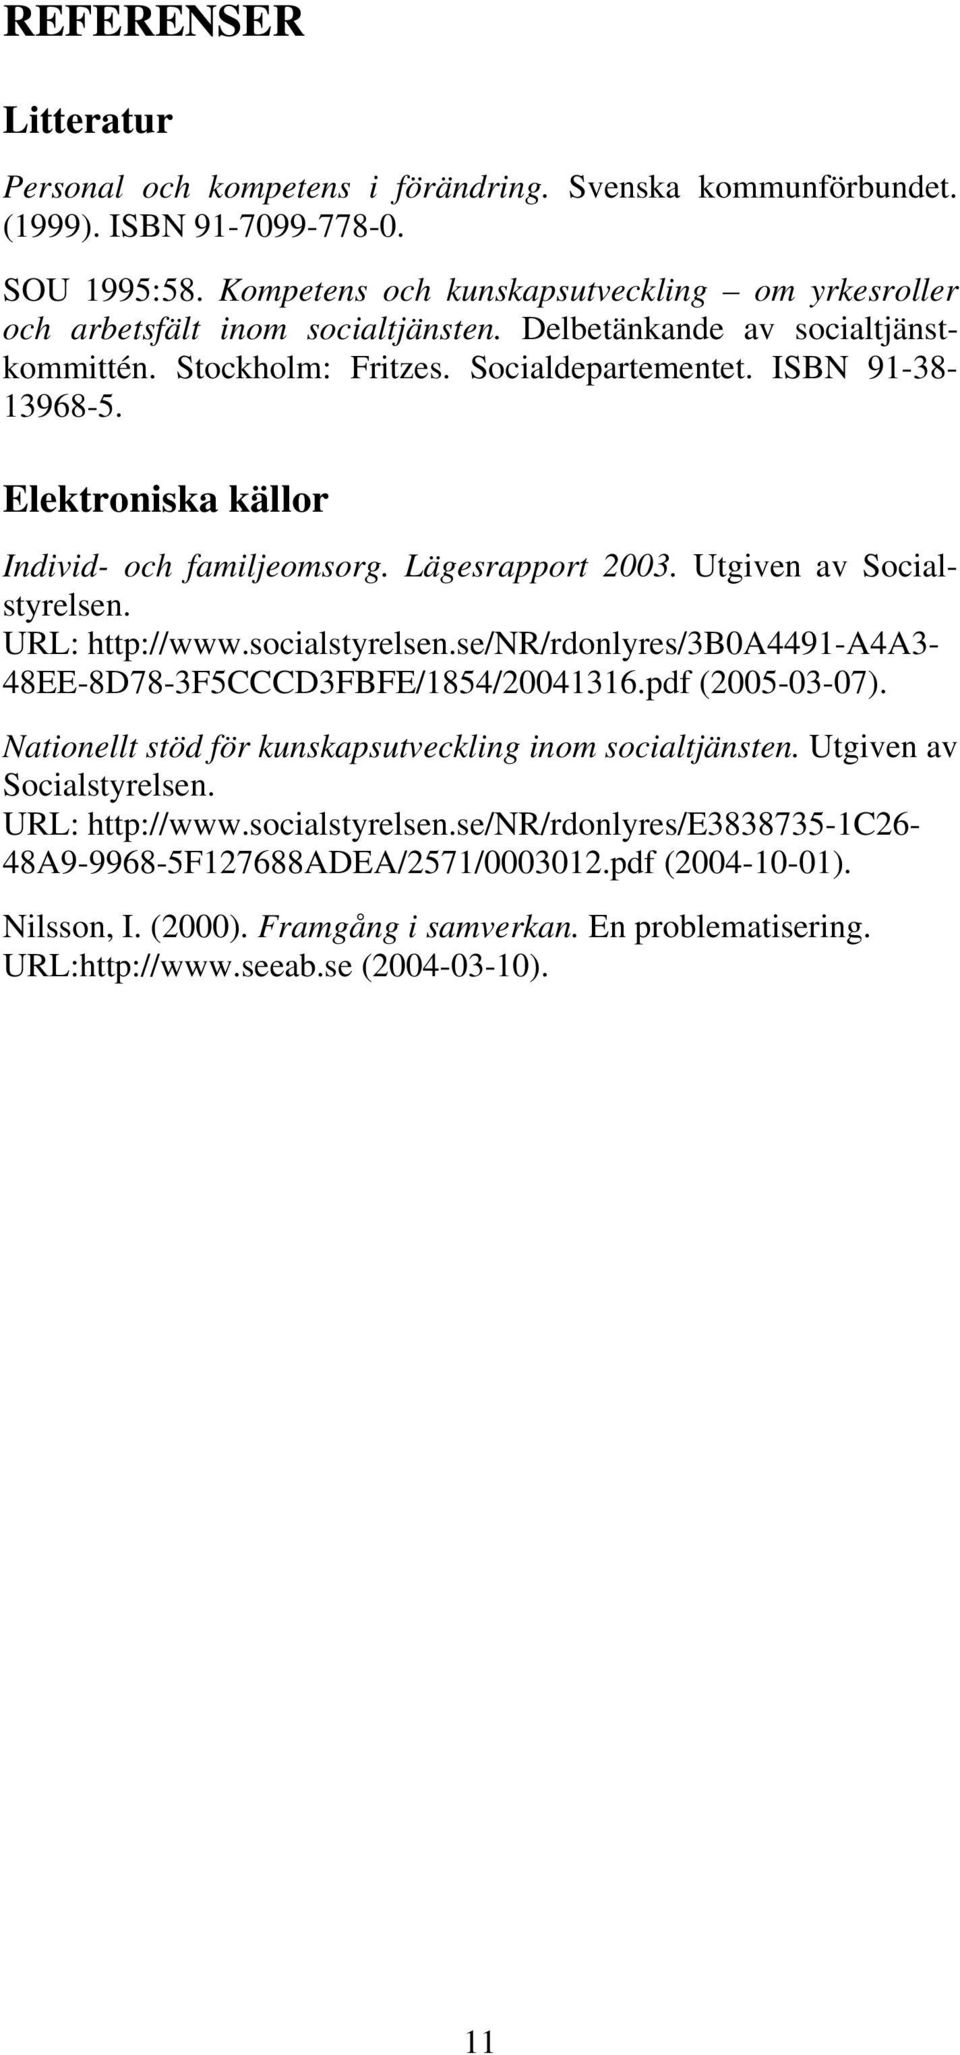 Elektroniska källor Individ- och familjeomsorg. Lägesrapport 2003. Utgiven av Socialstyrelsen. URL: http://www.socialstyrelsen.se/nr/rdonlyres/3b0a4491-a4a3-48ee-8d78-3f5cccd3fbfe/1854/20041316.